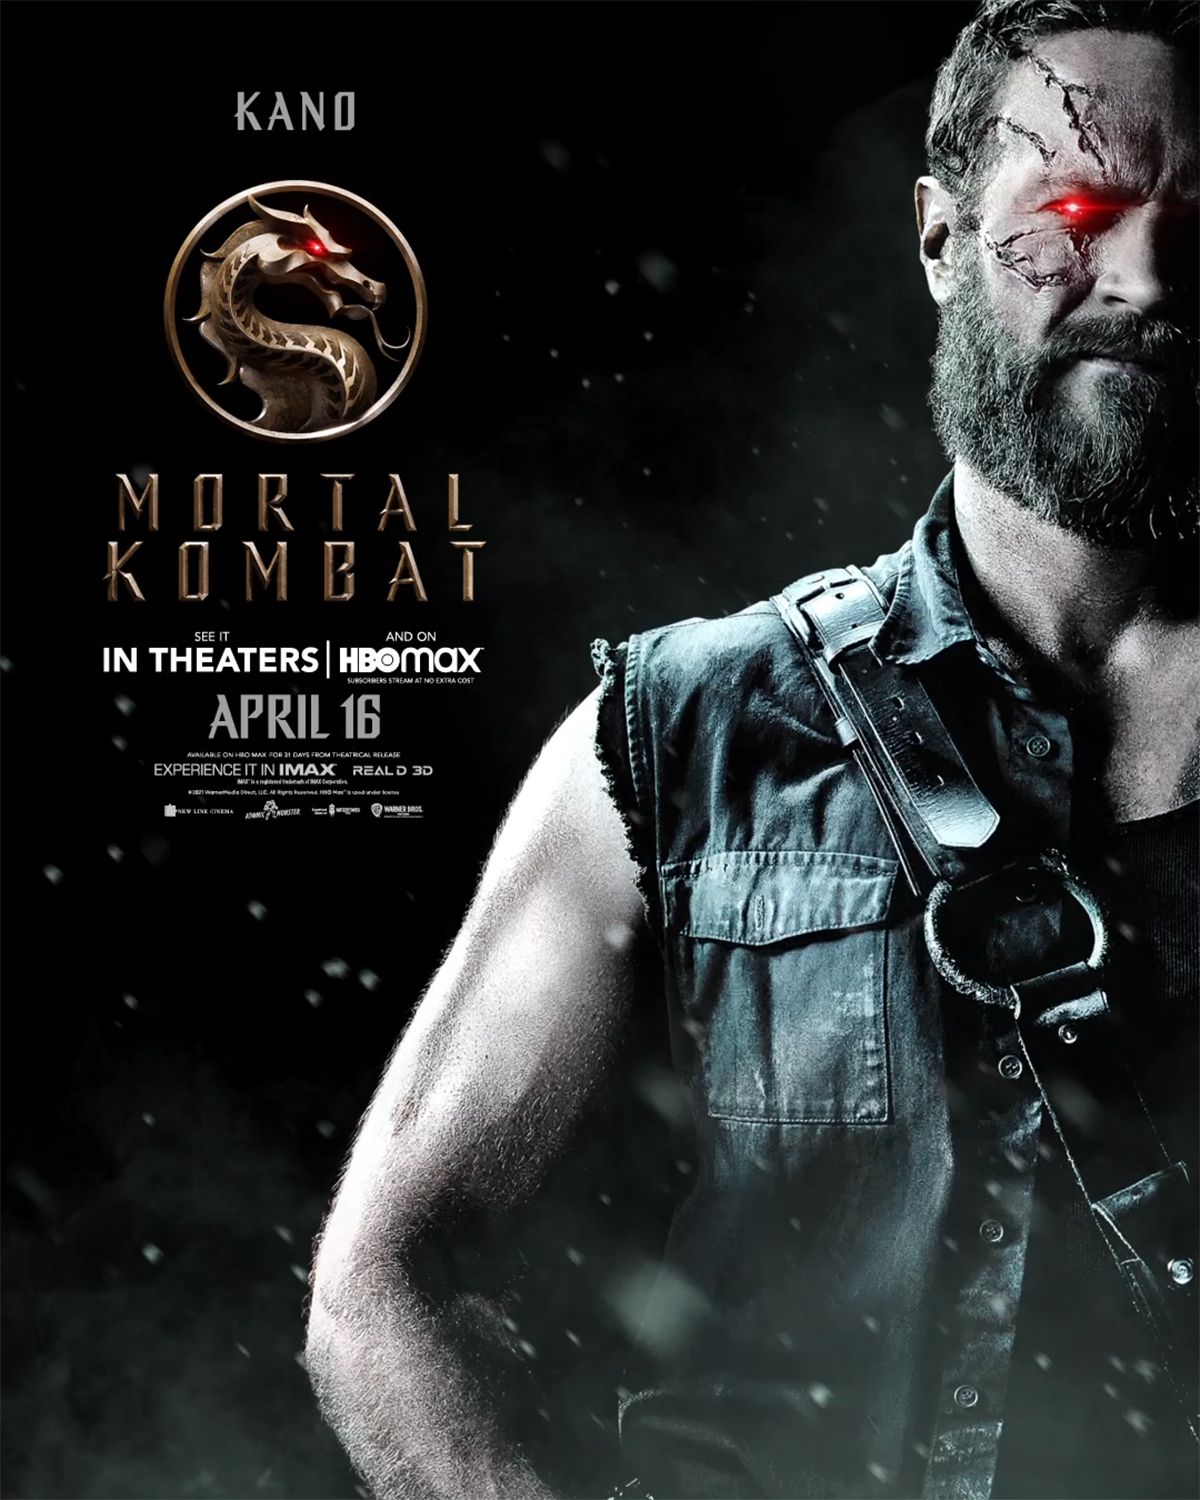 Kano character poster for Mortal Kombat movie